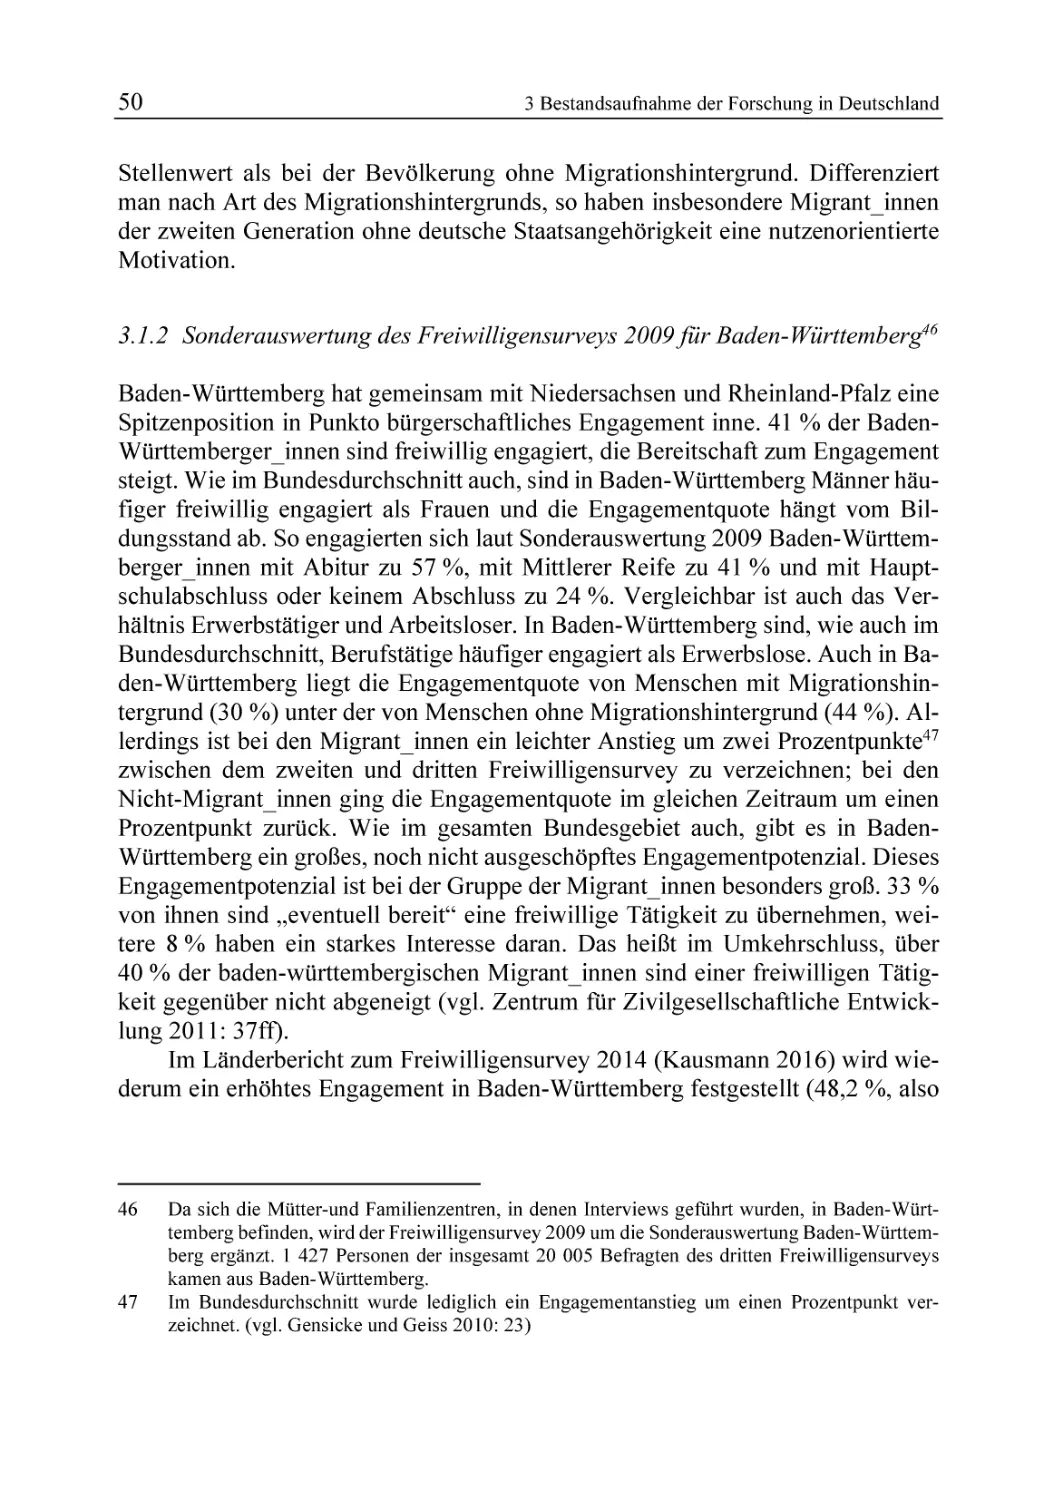 3.1.2 Sonderauswertung des Freiwilligensurveys 2009 für Baden-Württemberg